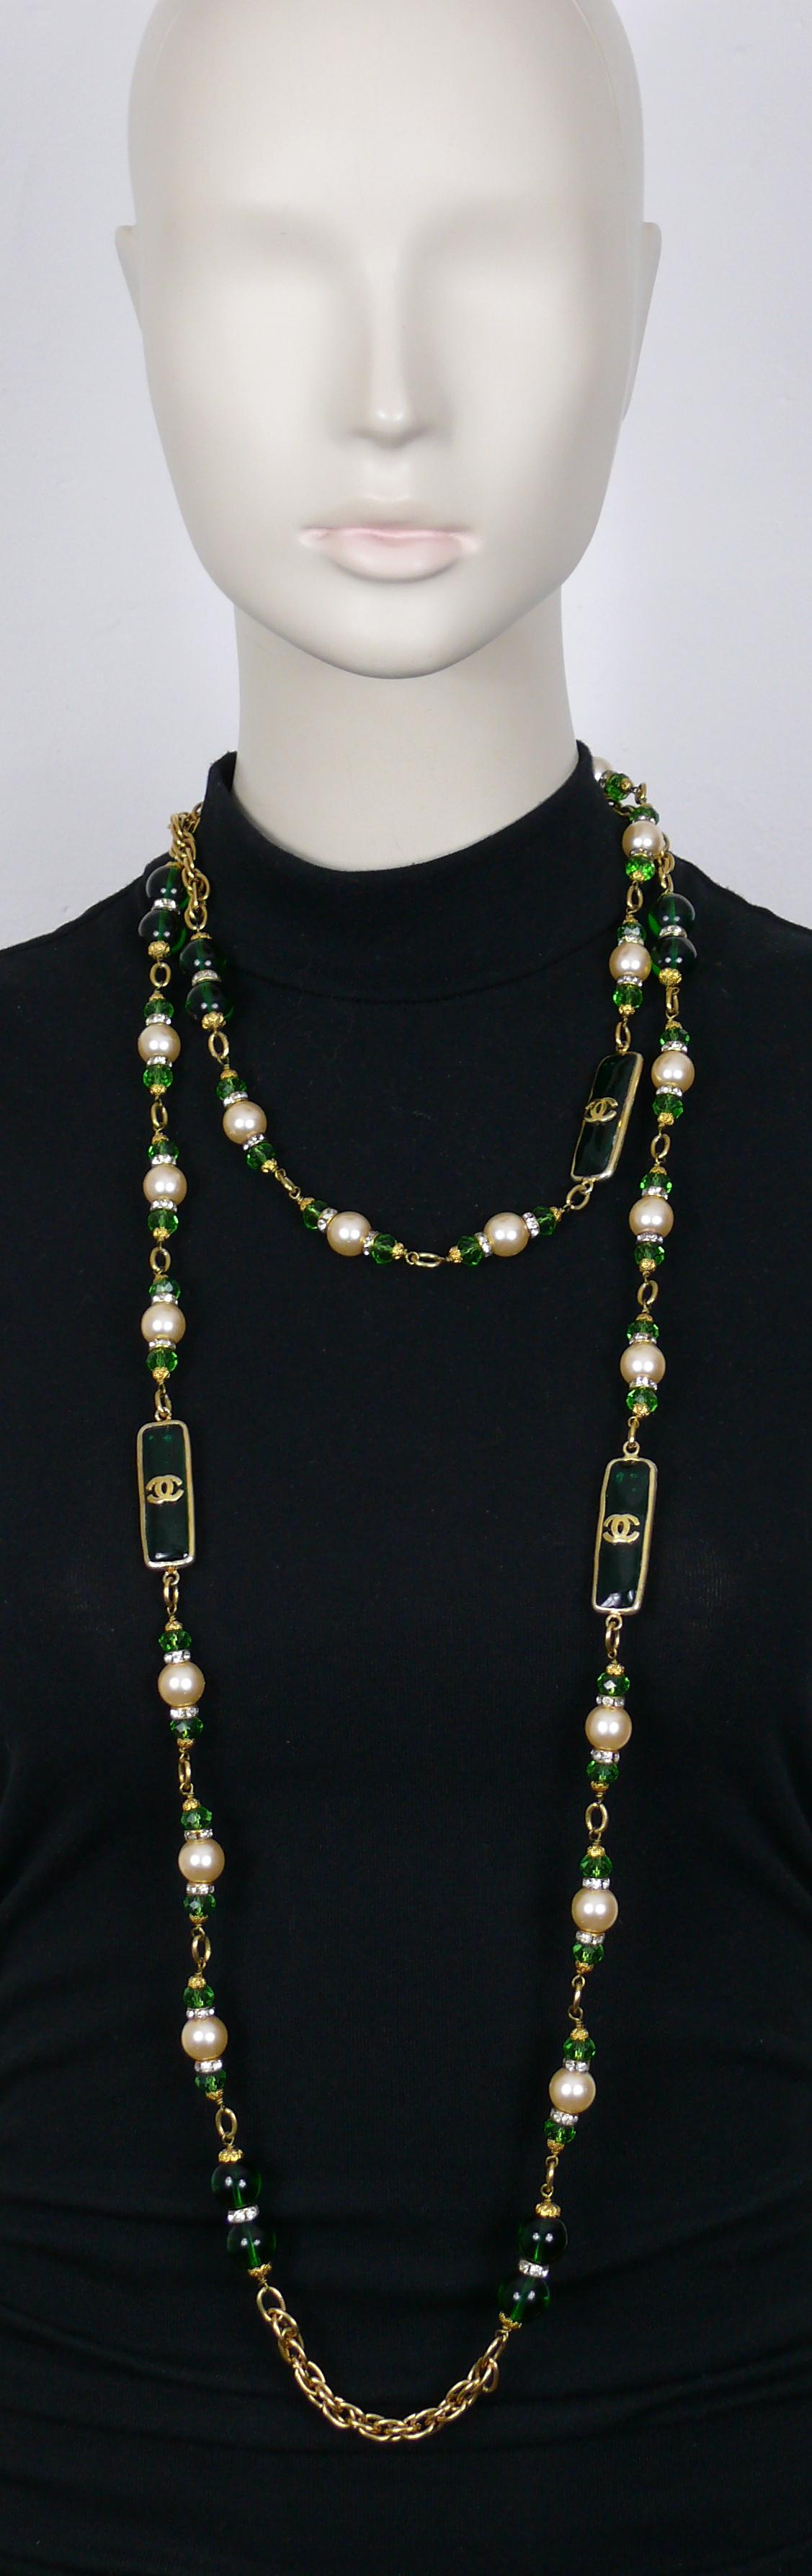 CHANEL by KARL LAGERFELD magnifique collier vintage en chaîne dorée comprenant des perles de verre vertes MAISON GRIPOIX et des maillons rectangulaires avec des logos CC, des fausses perles de verre, des perles à facettes vertes et des rondelles de